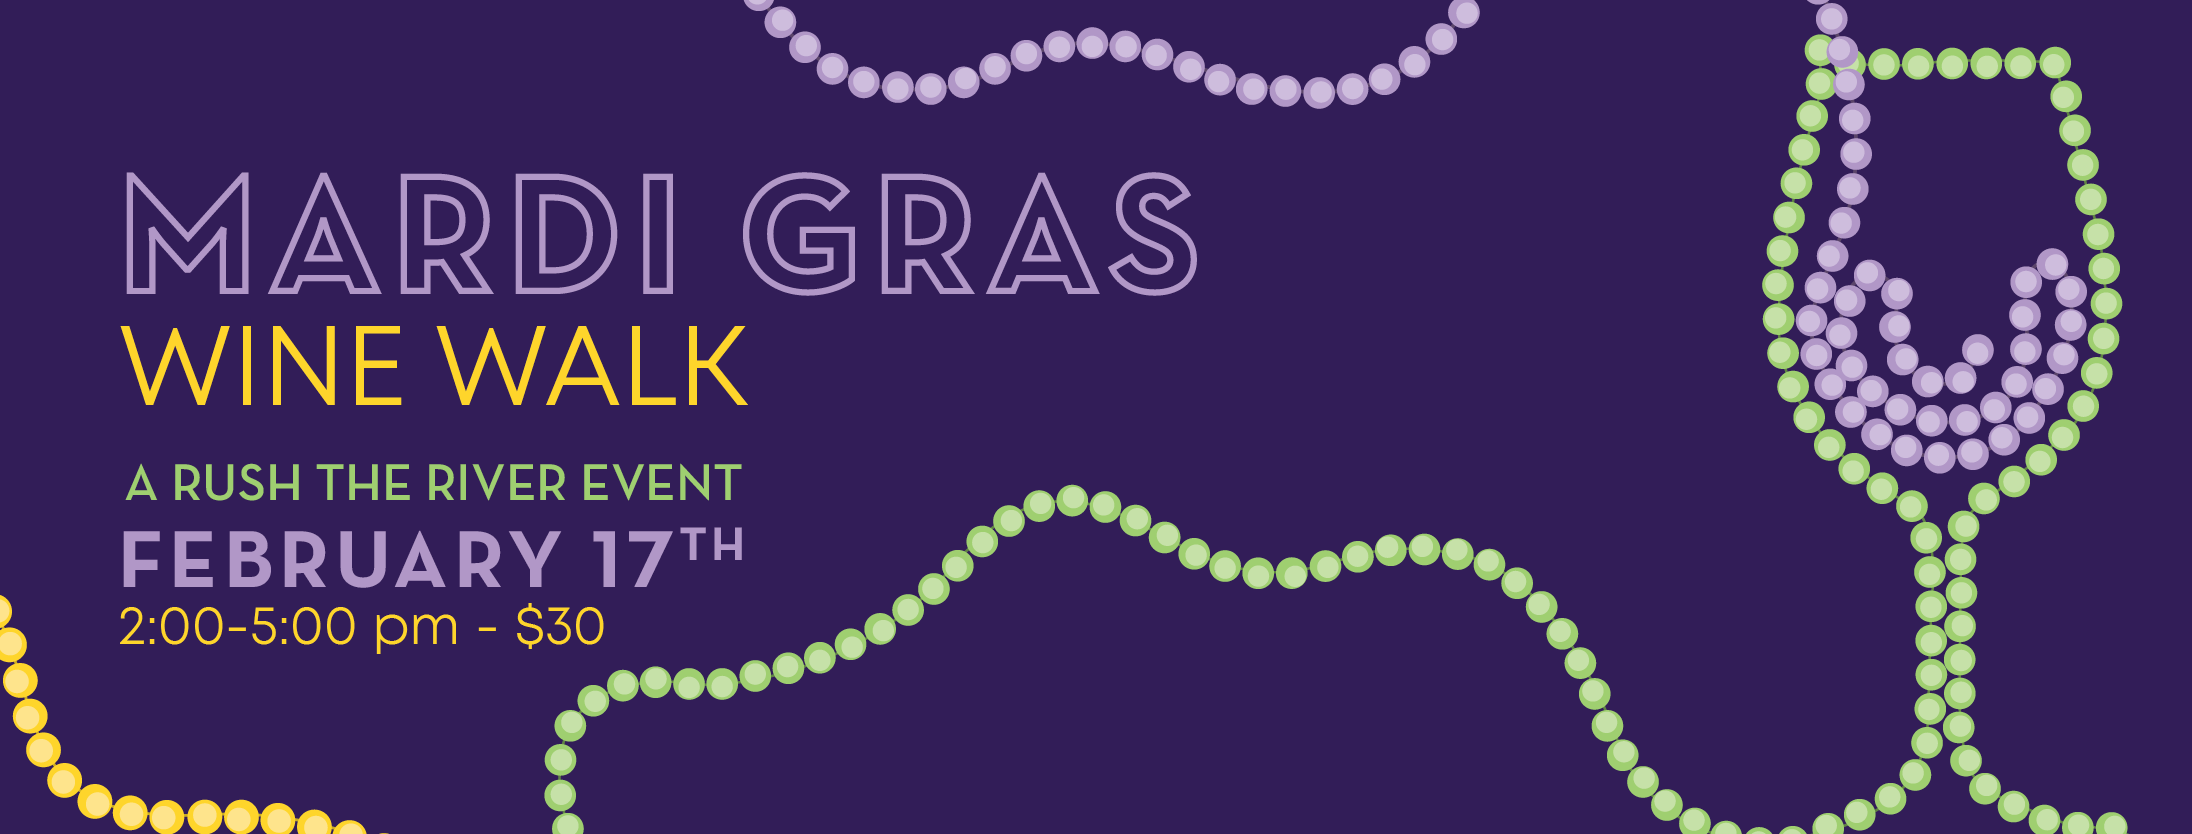 Mardi Gras Wine Walk banner